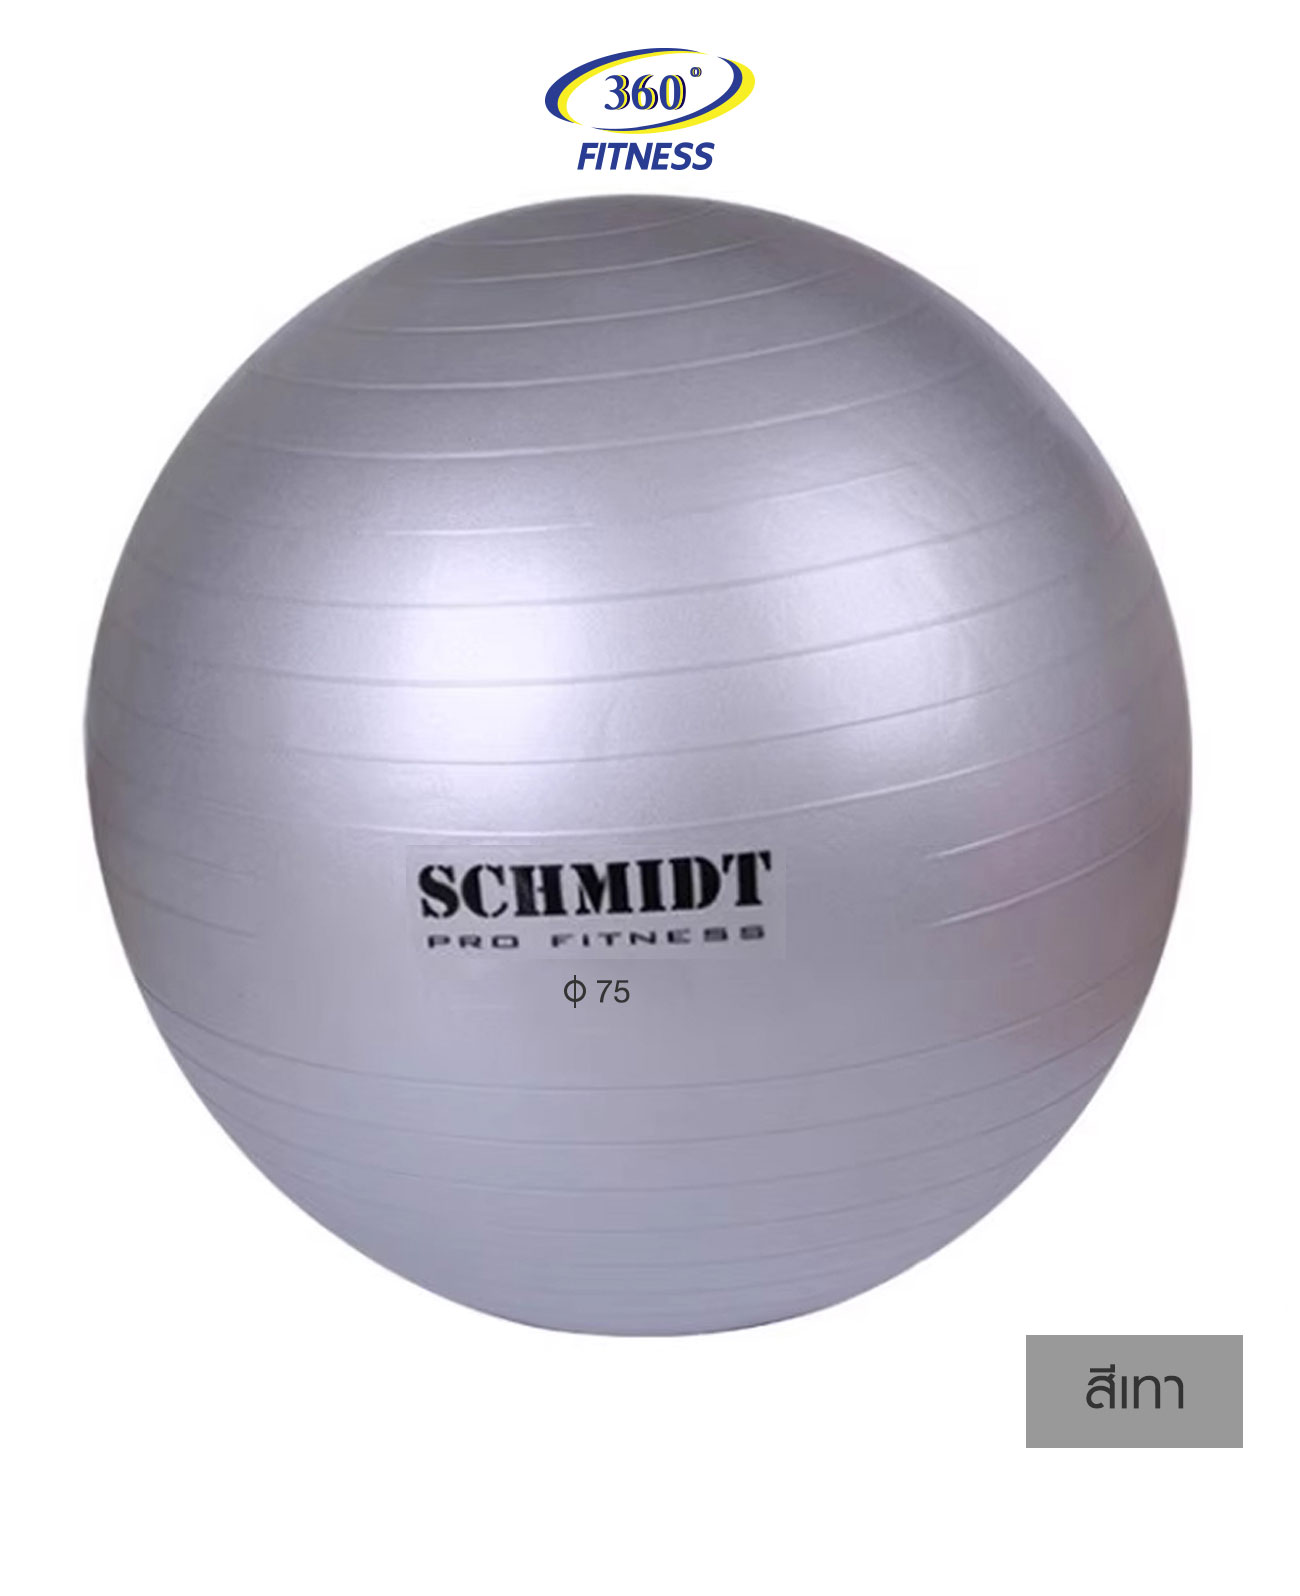 โยคะบอล รุ่น GB08 65 cm.